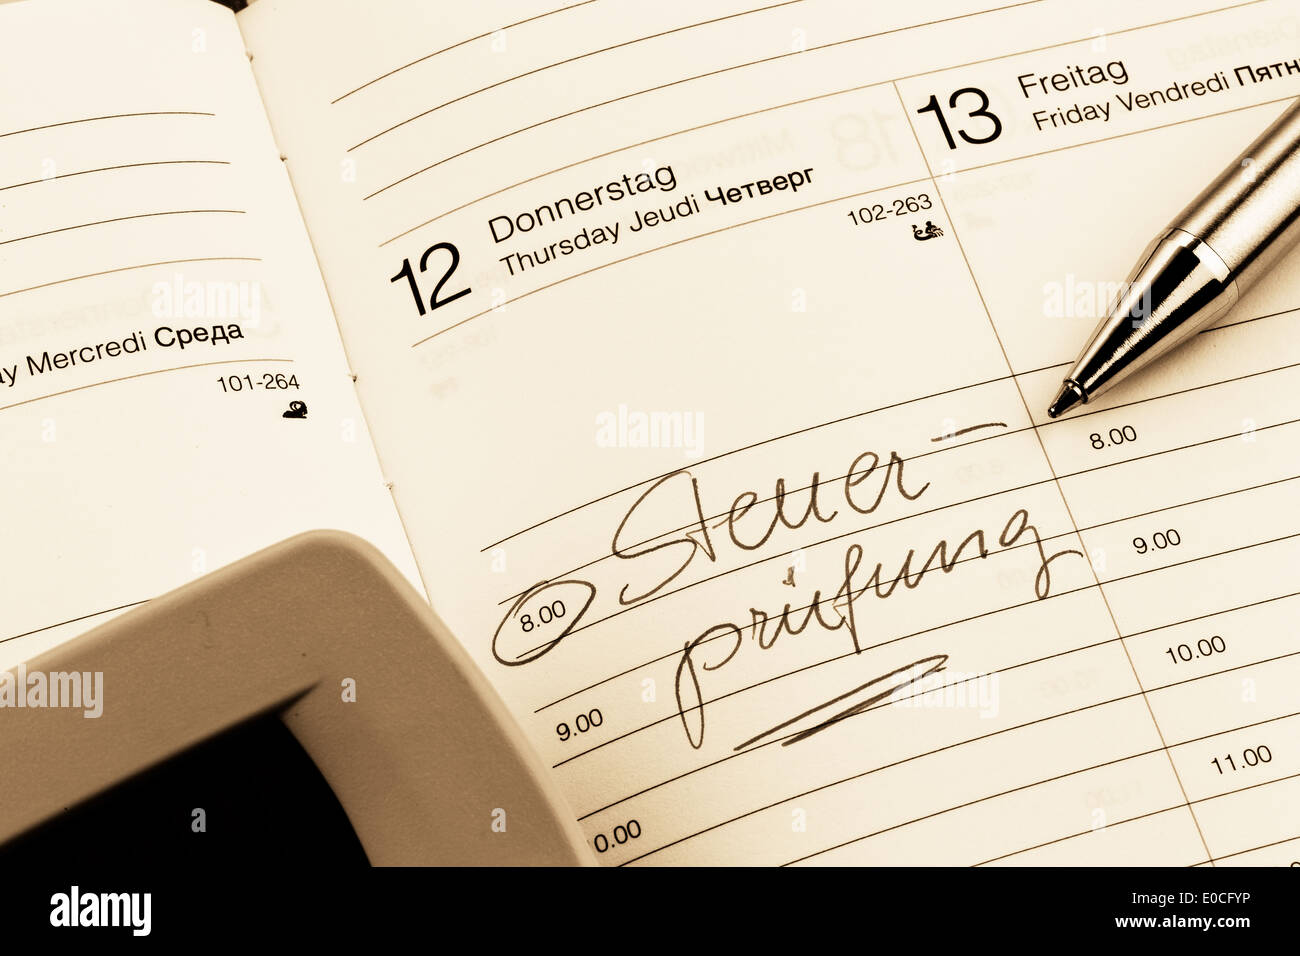 Un appuntamento viene messo giù in un calendario: Steuerpraeuefung, Ein Termin ist in einem Kalender eingetragen: Steuerpraeuefung Foto Stock